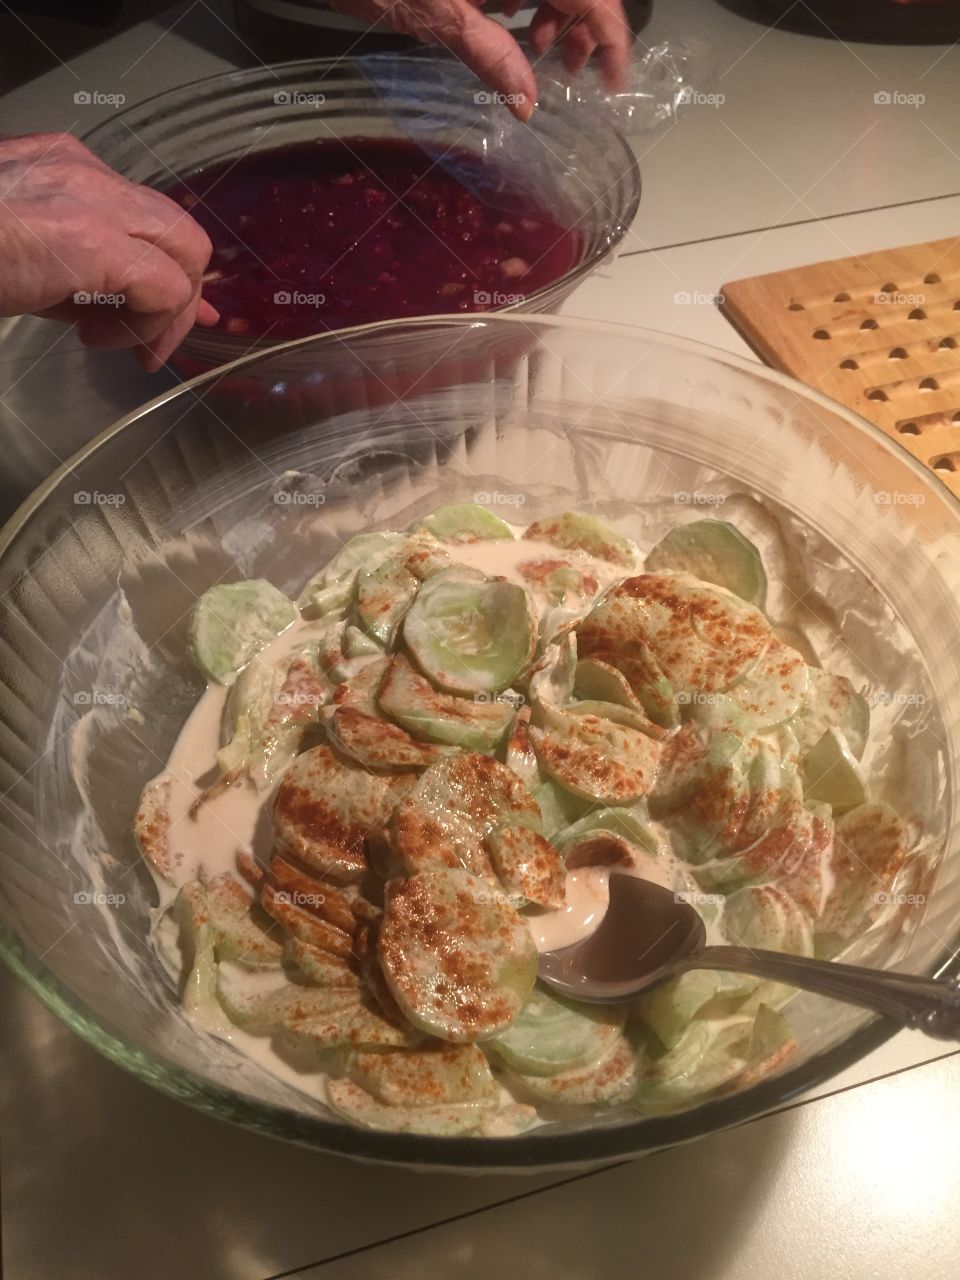 Hungarian cucumber salad